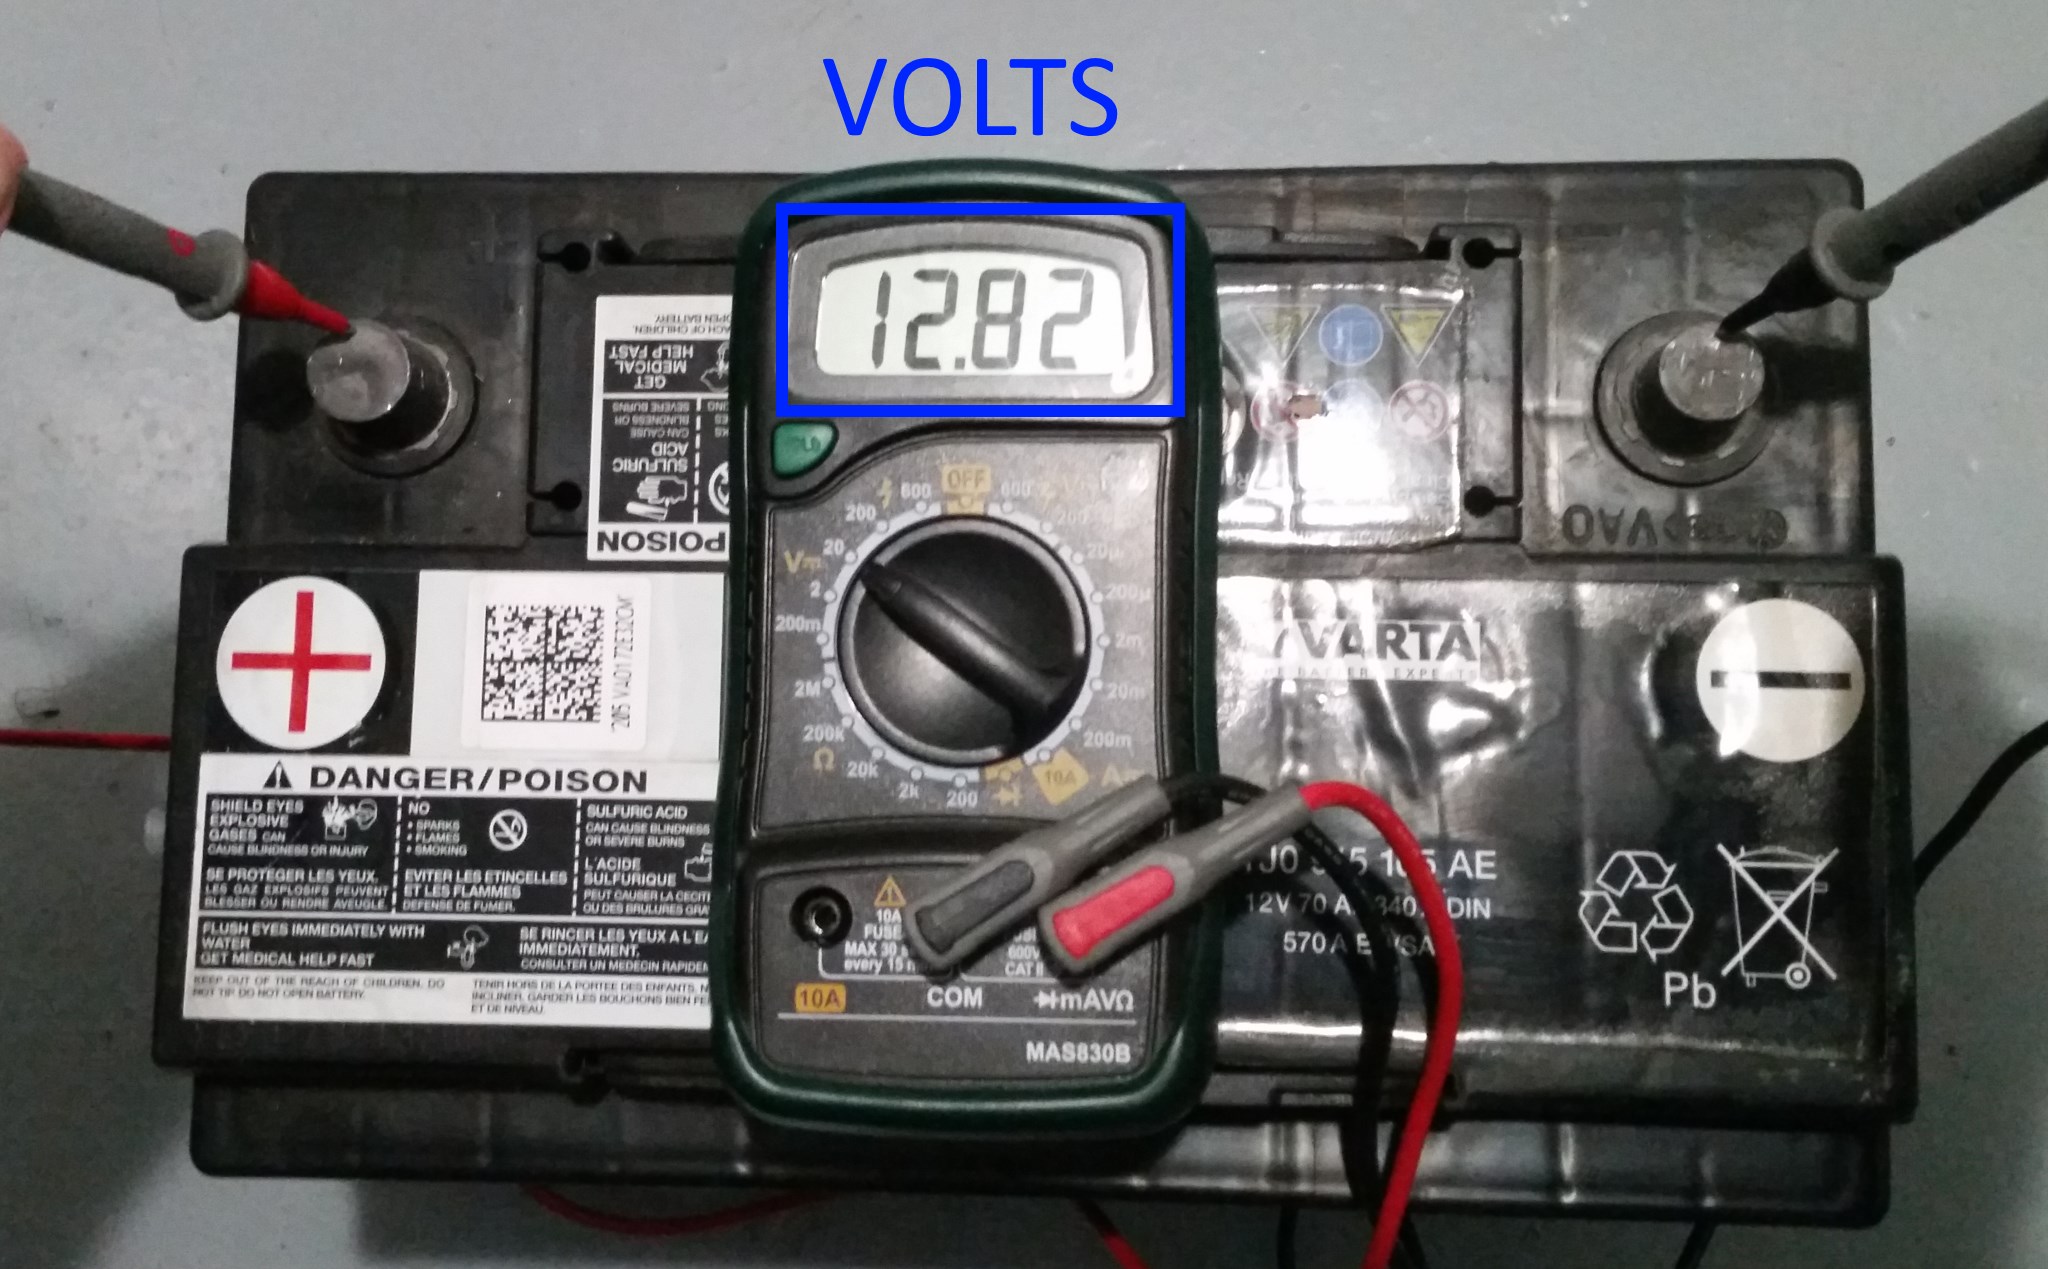 Batterie chargée avec un voltmètre qui affiche 12.73V